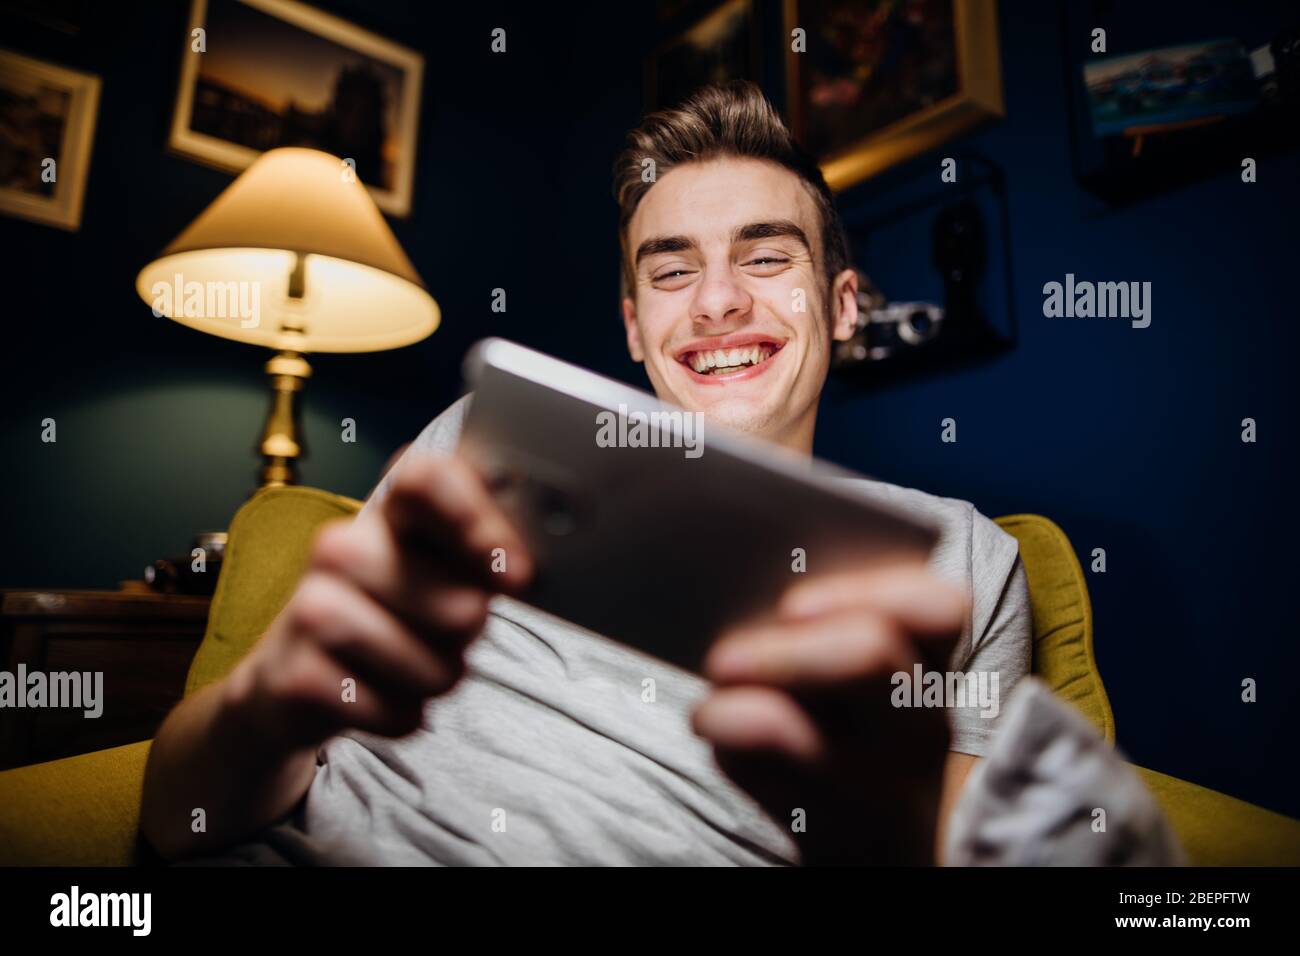 Lächelnder Jugendlicher spielt Videospiele auf Smartphone.Abstrakte virtuelle Realität Gaming-Welt.Internet-Glücksspiel.Zeit zu Hause allein.Gaming unterhalten Stockfoto